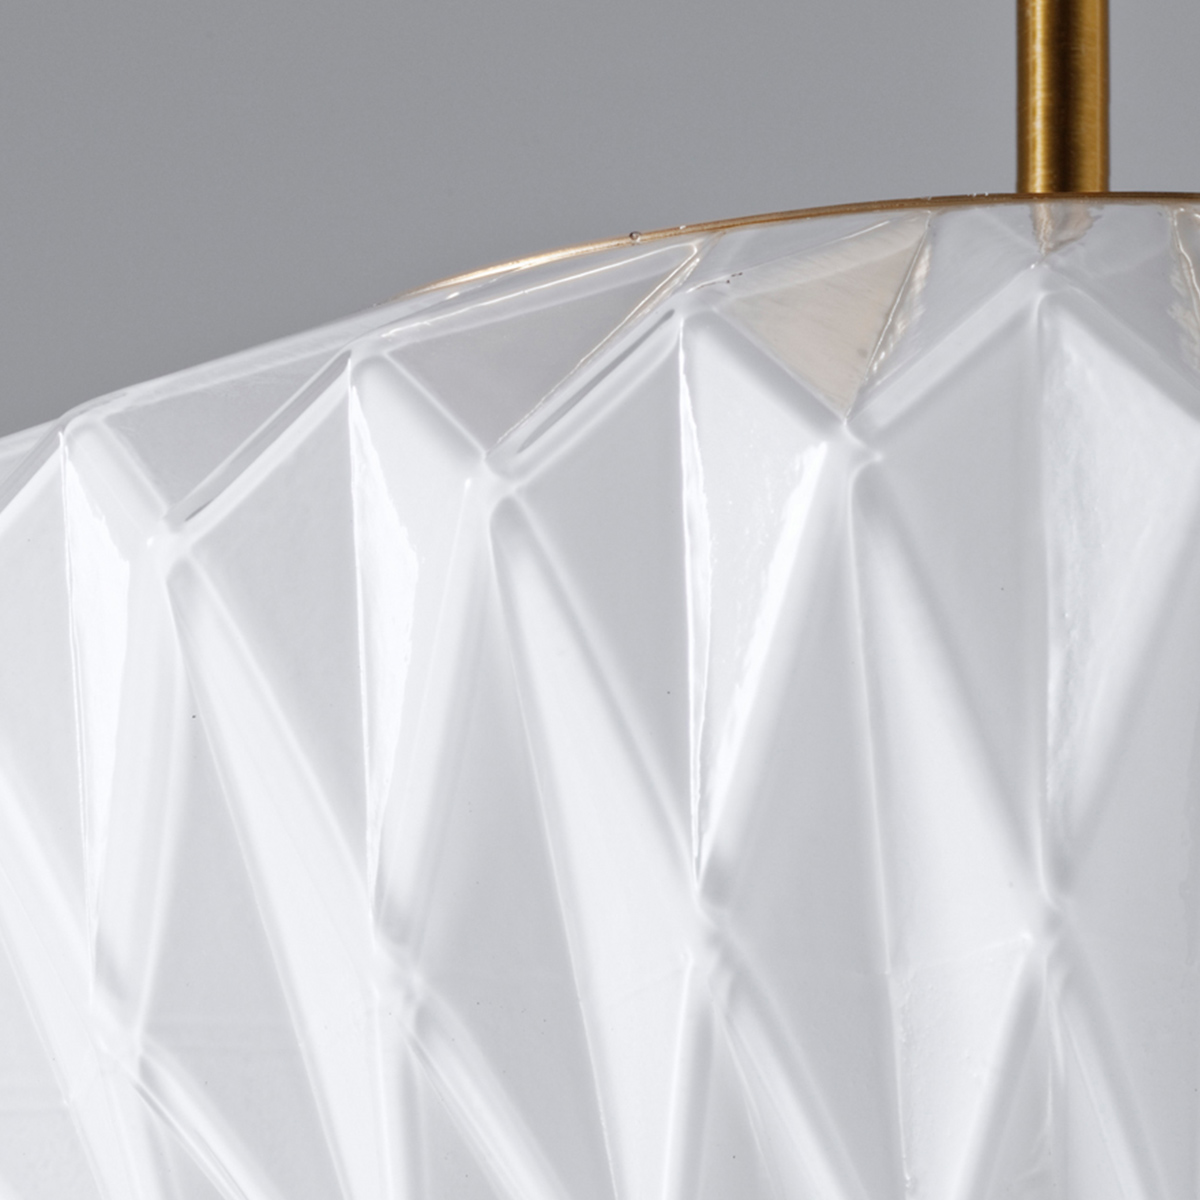 シーリングライト オリーン Olin 白熱球付き LED対応 3灯 6畳 8畳 天井